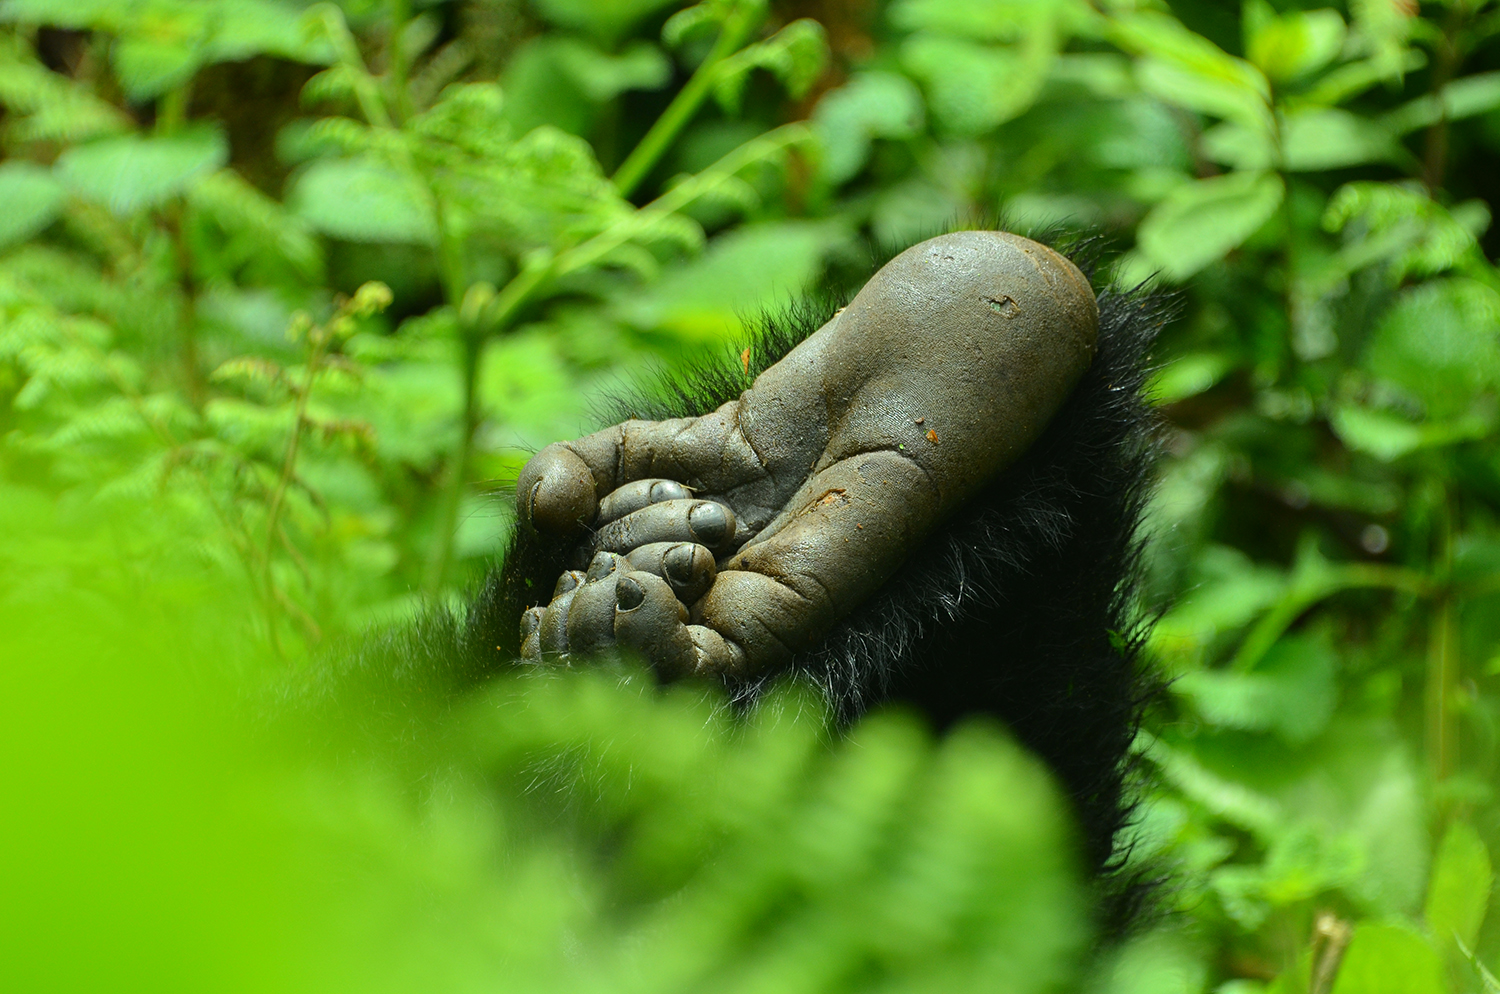 Do gorillas have 4 hands?